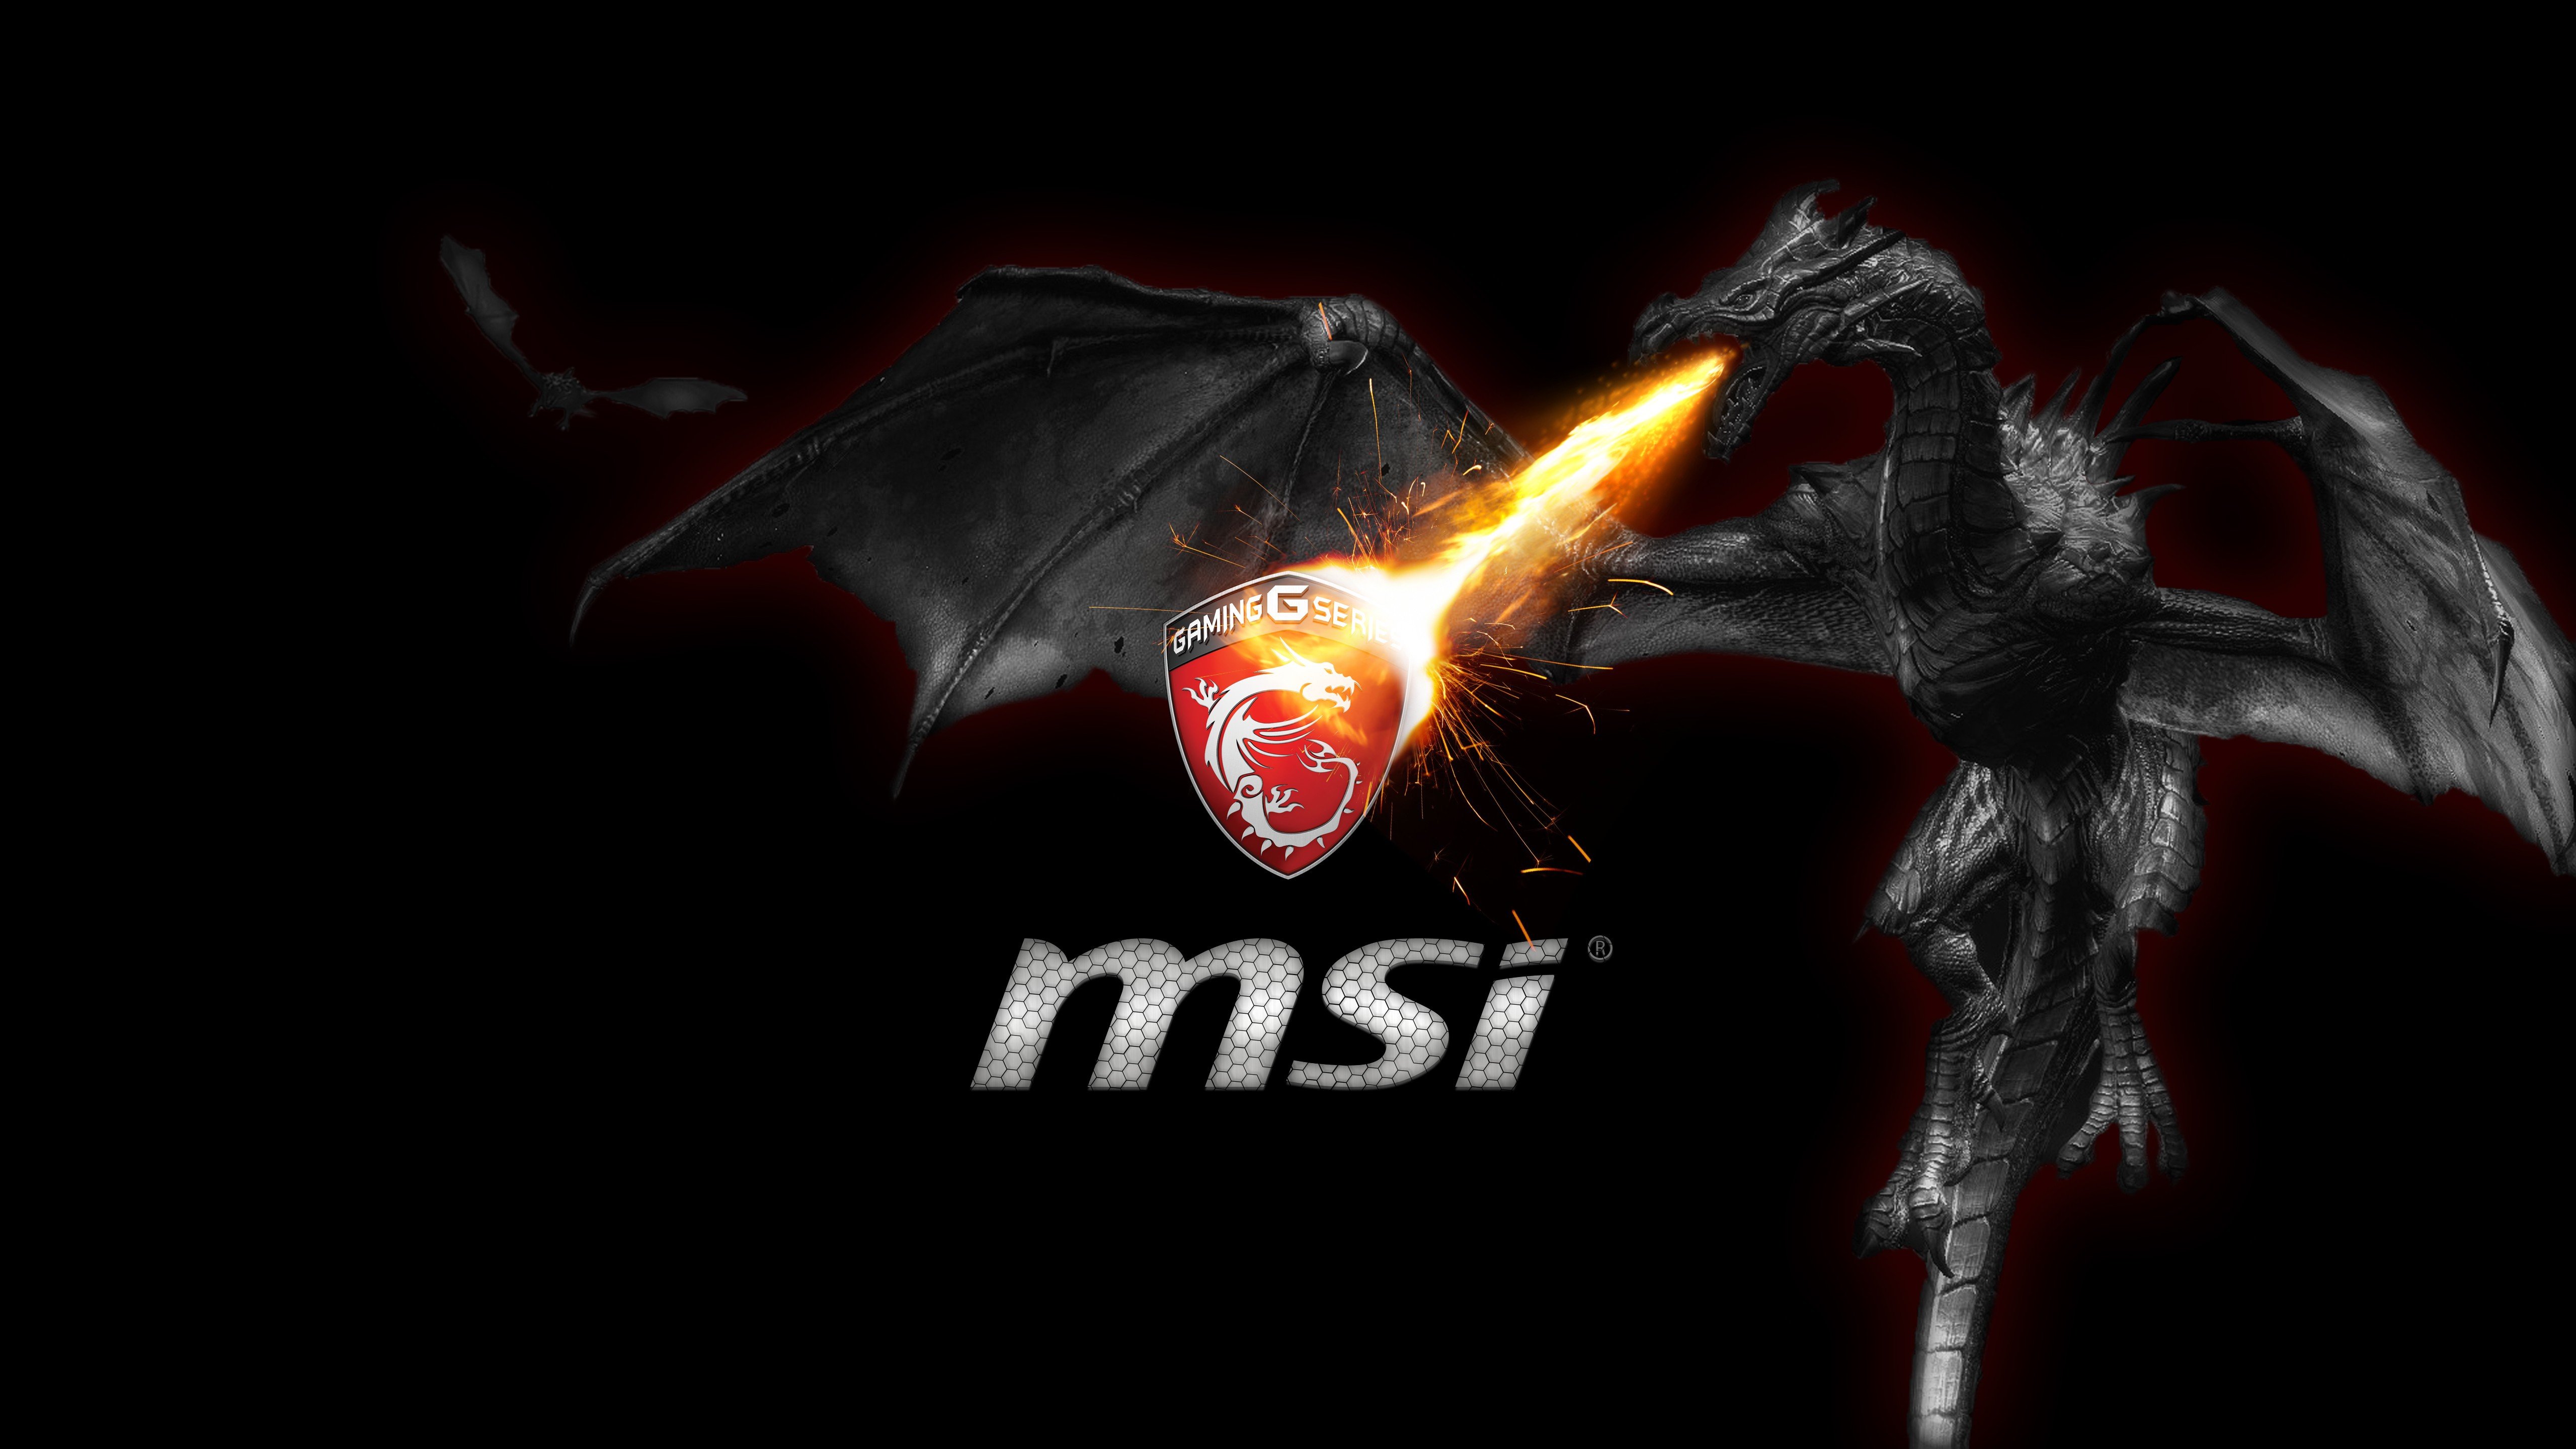 Zastaki.com - Дракон логотип MSI G Series MSI Gaming